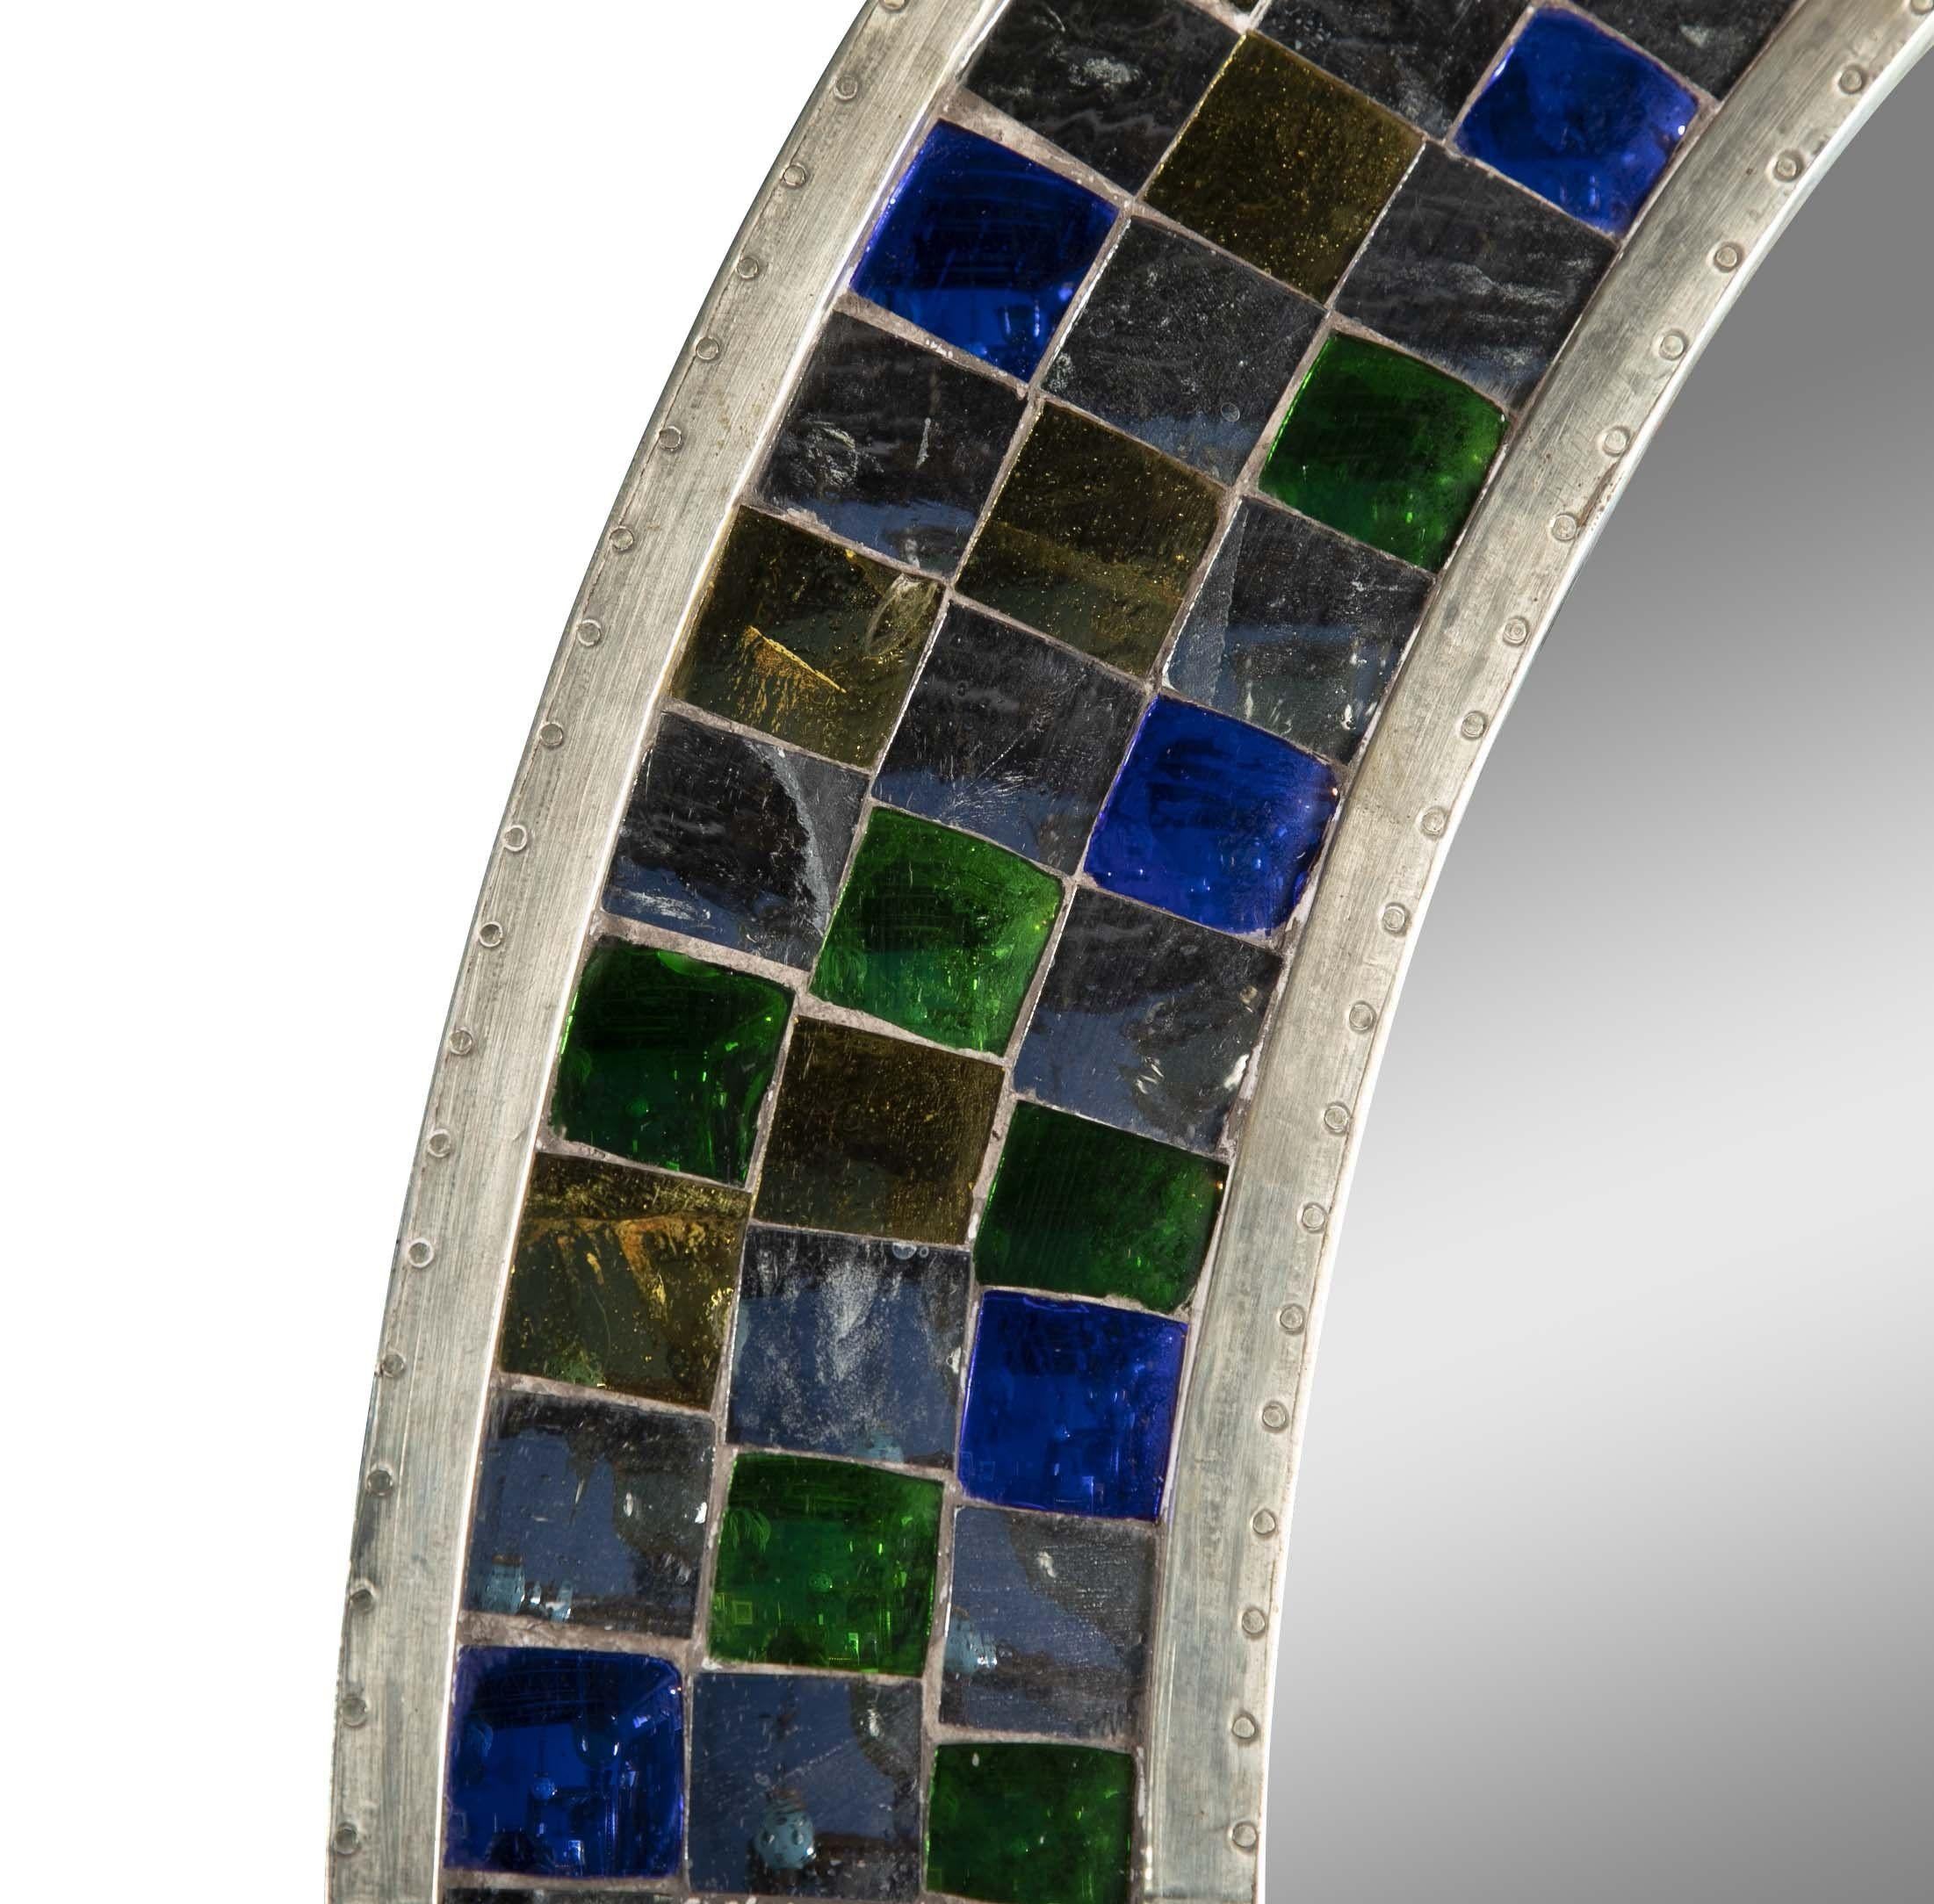 Mehrfarbiger kugelförmiger Spiegel Mosaik über Teakholz-Spiegelrahmen. Tikria ist eine jahrhundertealte Mosaiktechnik, die in vielen Palastgebäuden der Moguln und Rajputen zu finden ist. Die Mosaikpaneele bestehen aus zerbrochenen Stücken einer